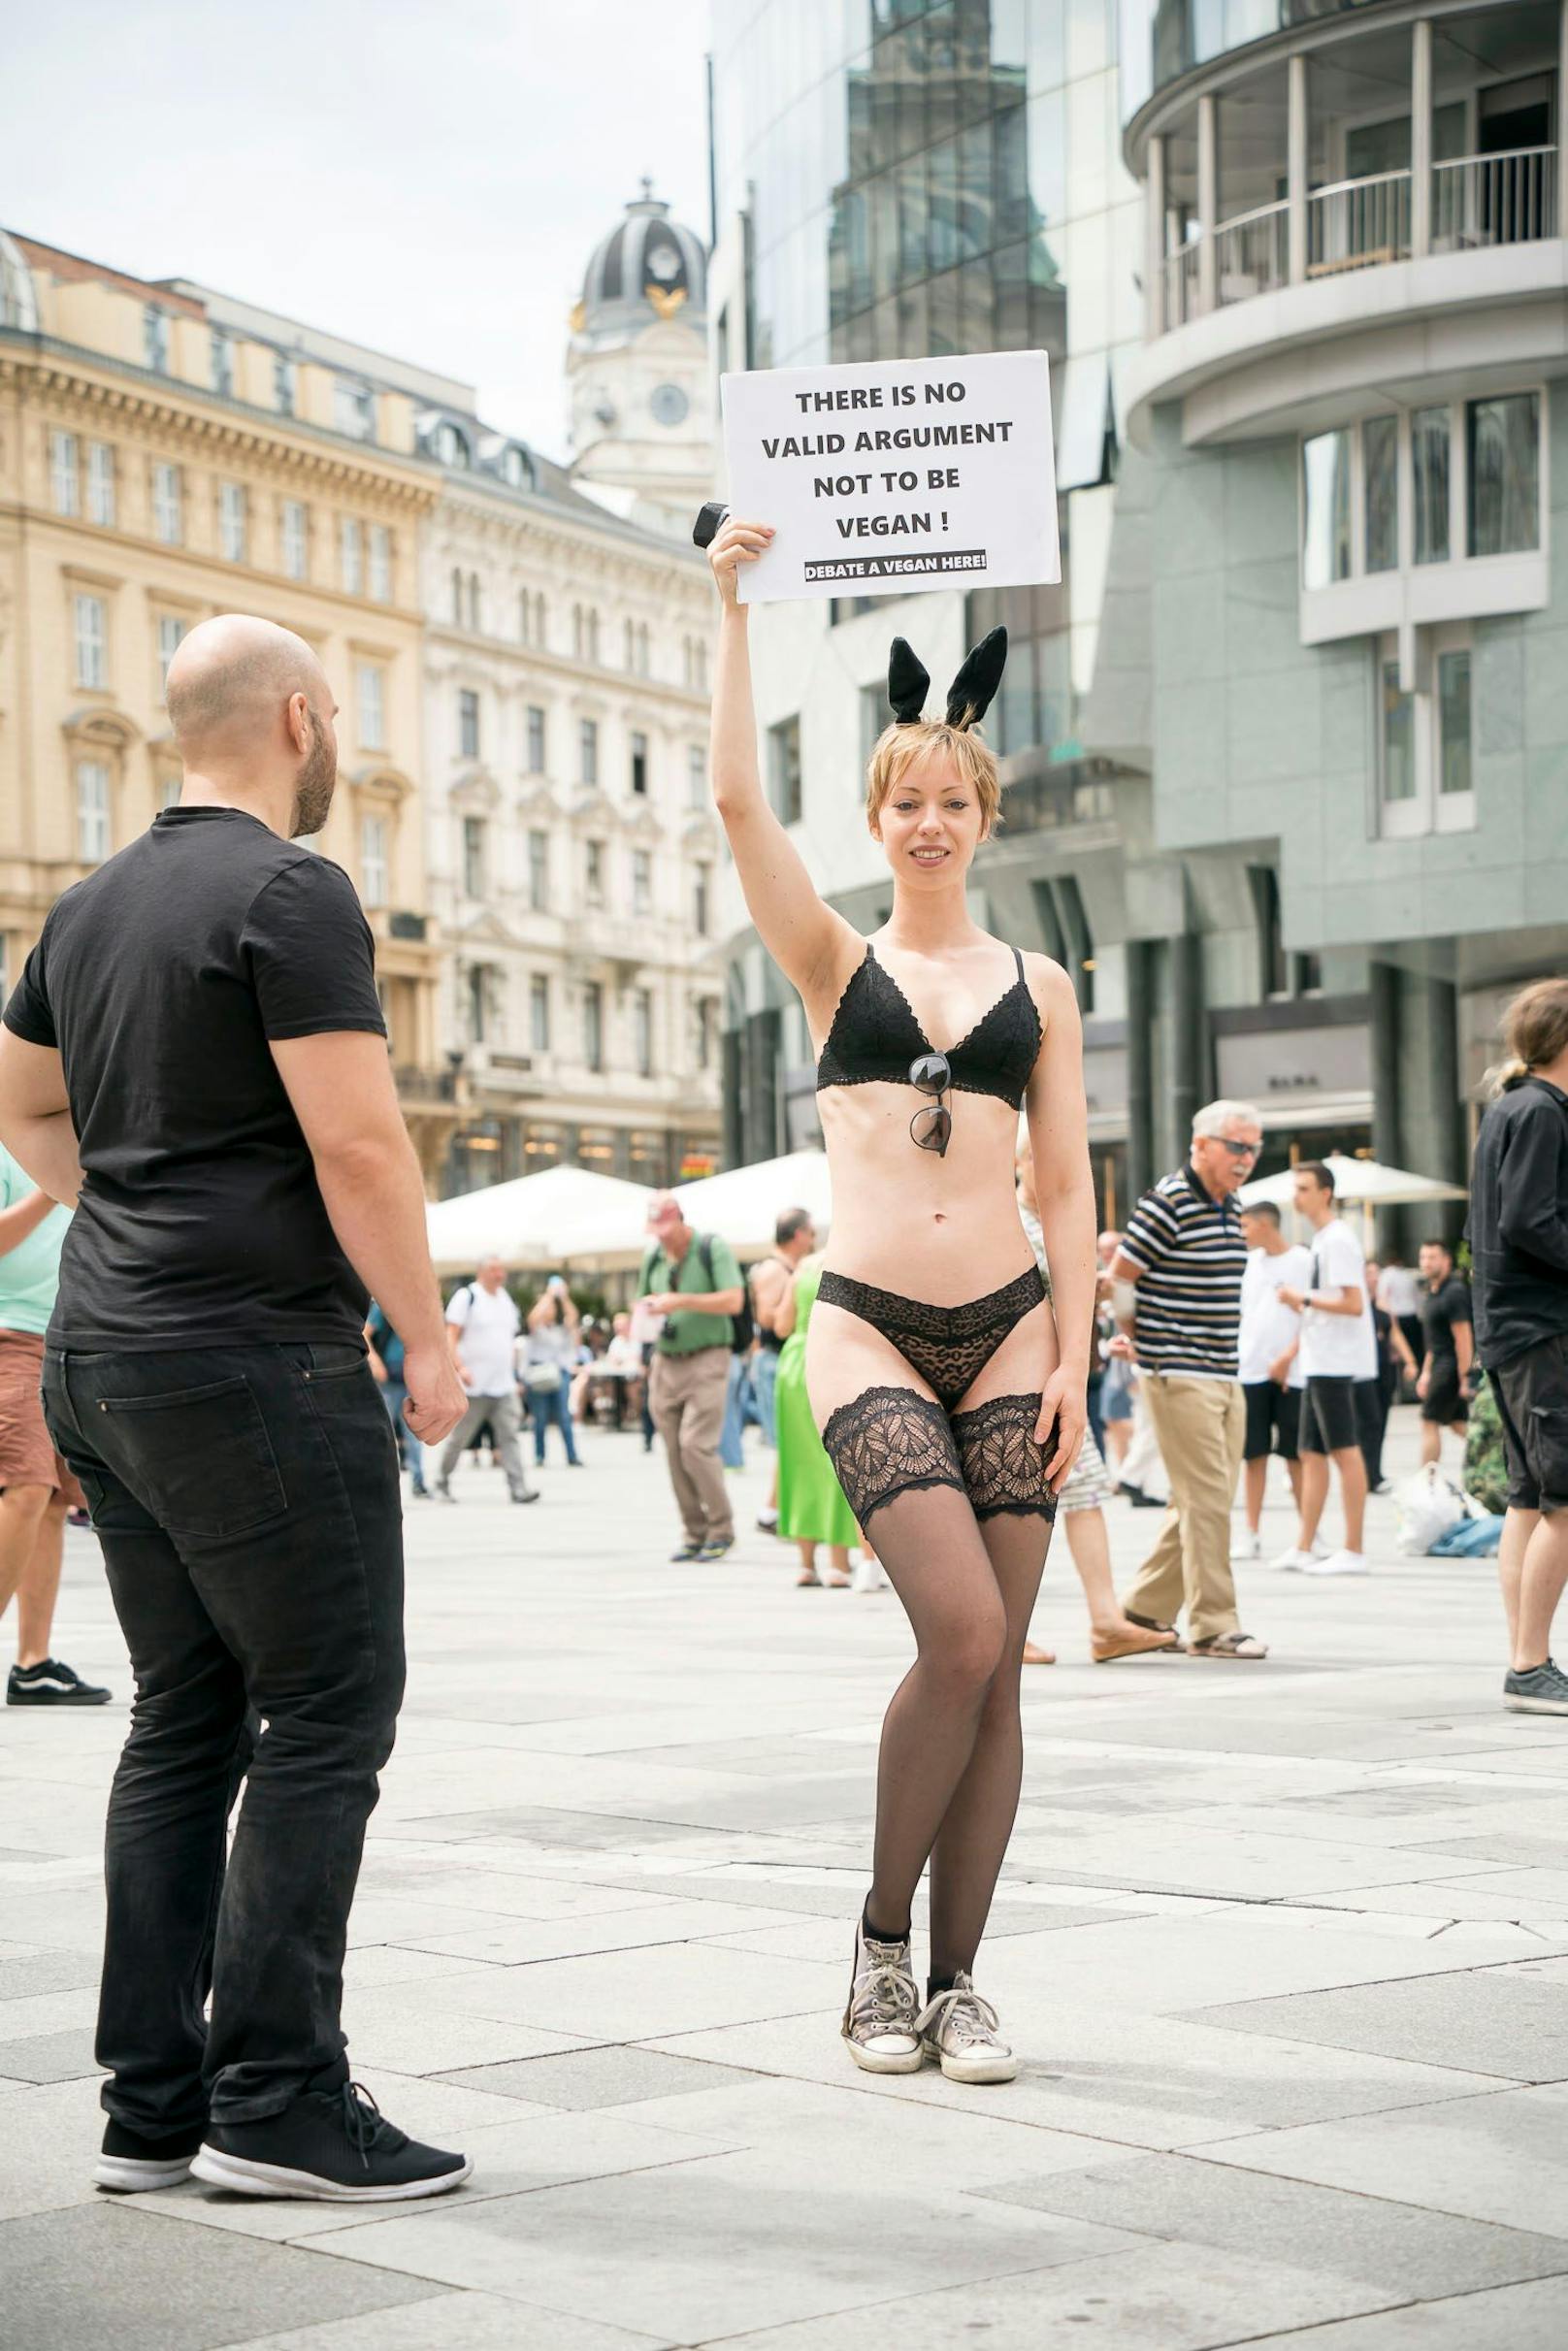 Nicht nur freizügig im Netz: Die "militante Veganerin" zeigte sich bereits 2022 bei einem Protest am Wiener Stephansplatz nur in Unterwäsche.